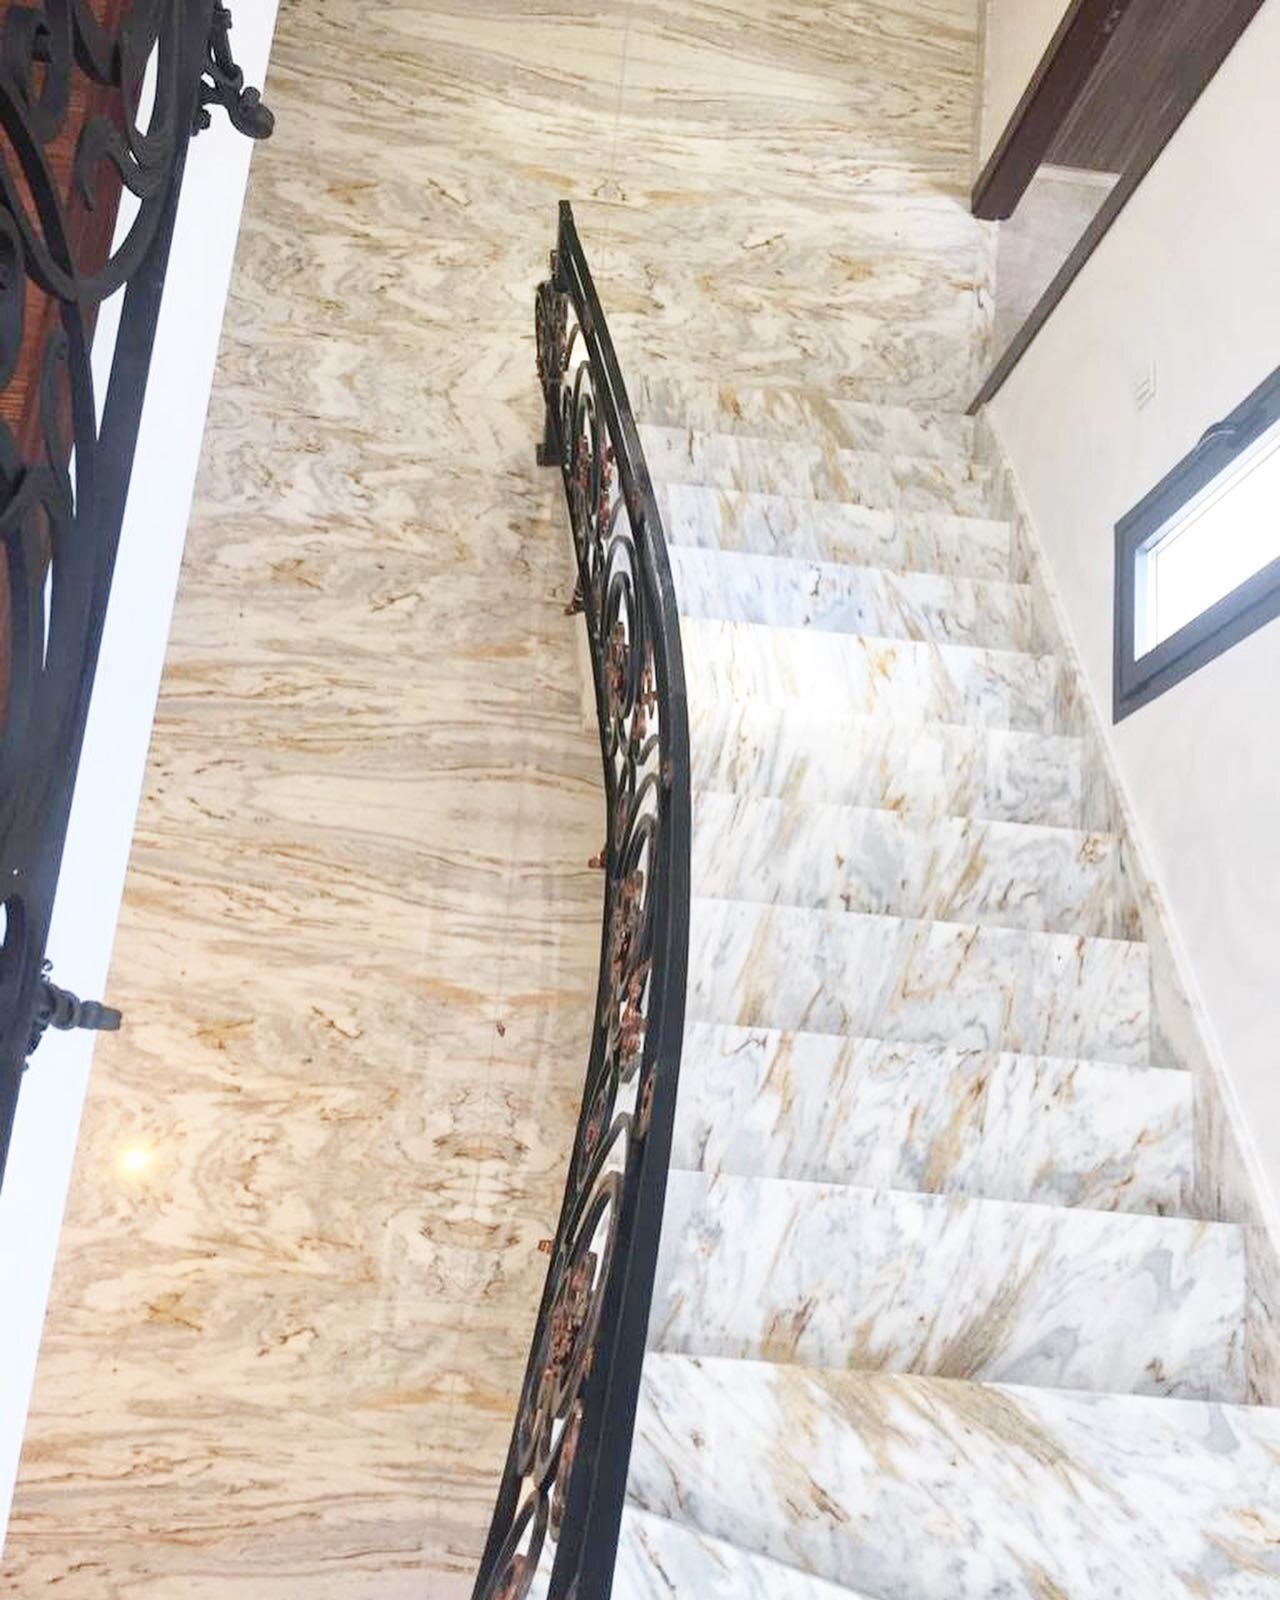 Esta escalera es de Blanco Calacata, es un material elegante y exclusivo, el cual sale de las canteras de Macael, en Almer&iacute;a. 
Un gran producto nacional. 

#marmol #marmolistas #marmolnacional #dise&ntilde;odeinteriores #casasbonitas #escalera